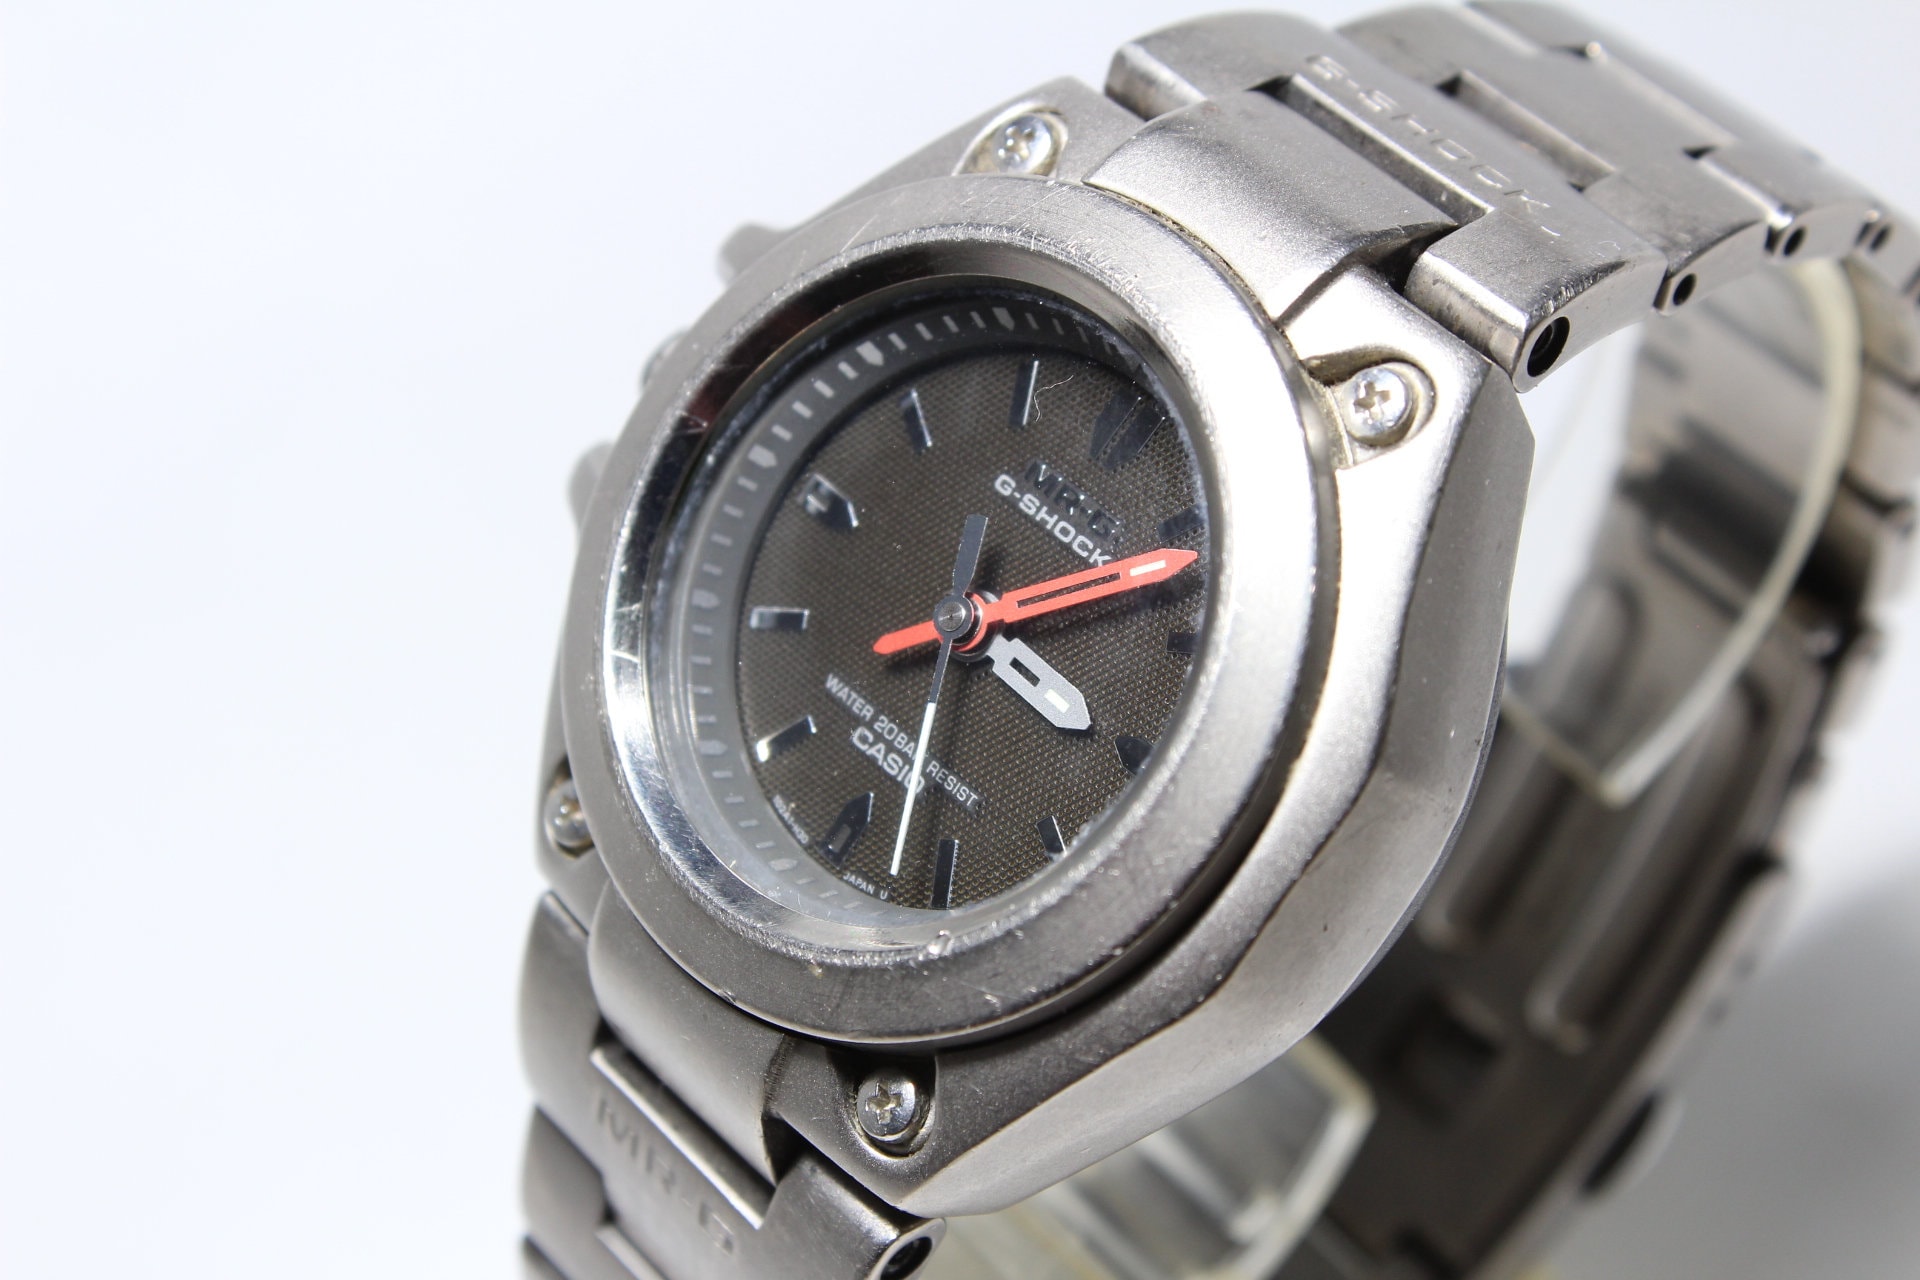 CASIO G-shock MR-G MRG-120T Titanium Analog Watch 19 Cm Wrist Size 